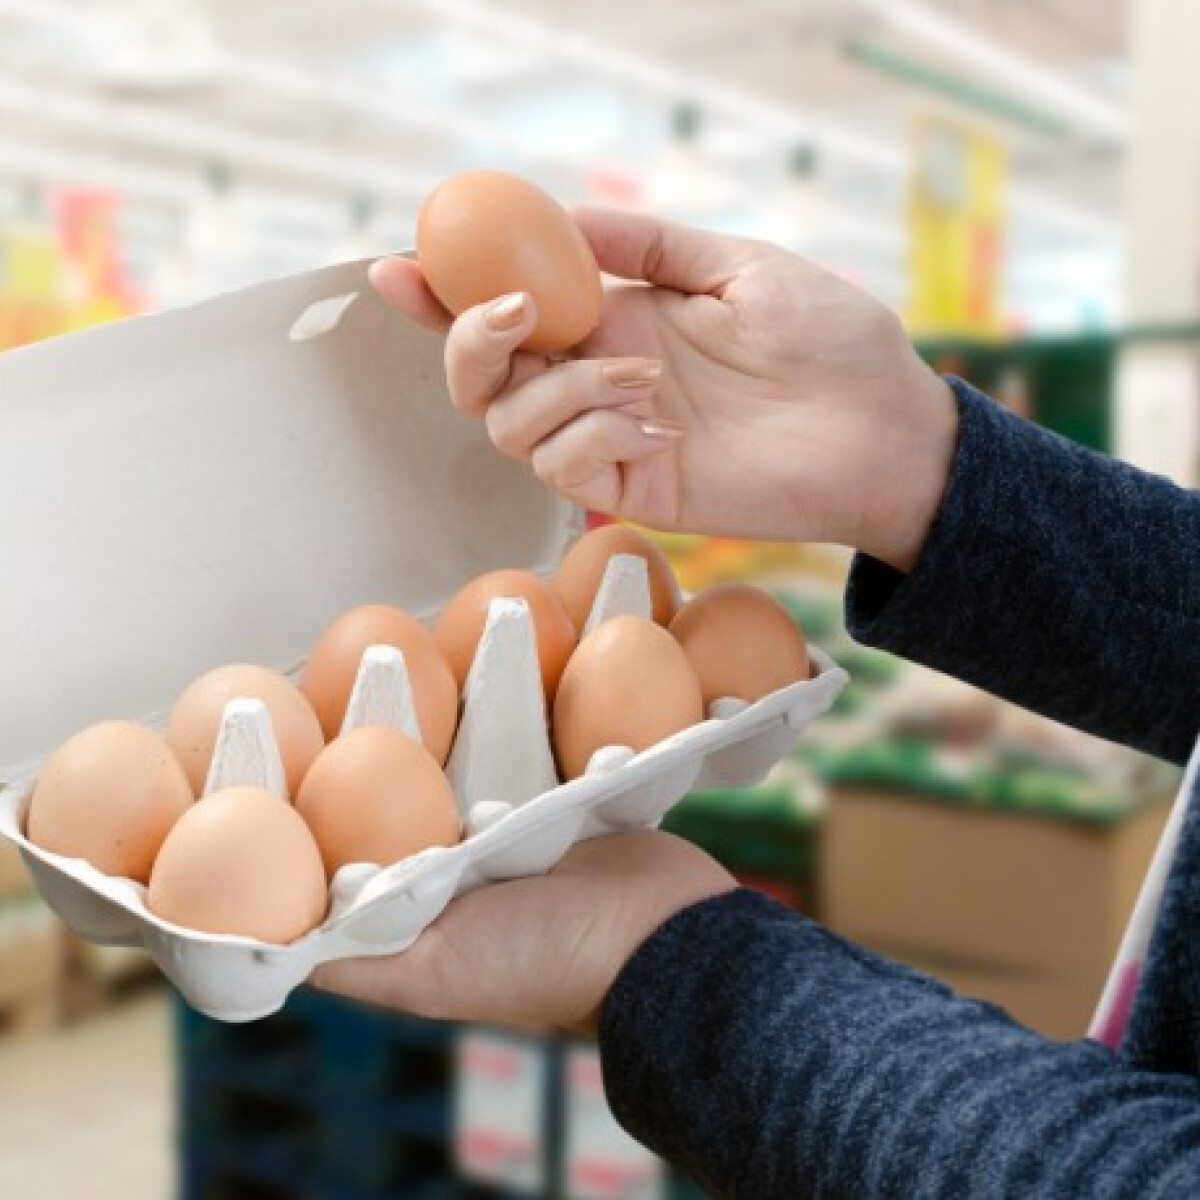 Ketreces, mélyalmos vagy szabadtartású - melyik tojást választod? SZAVAZZ!